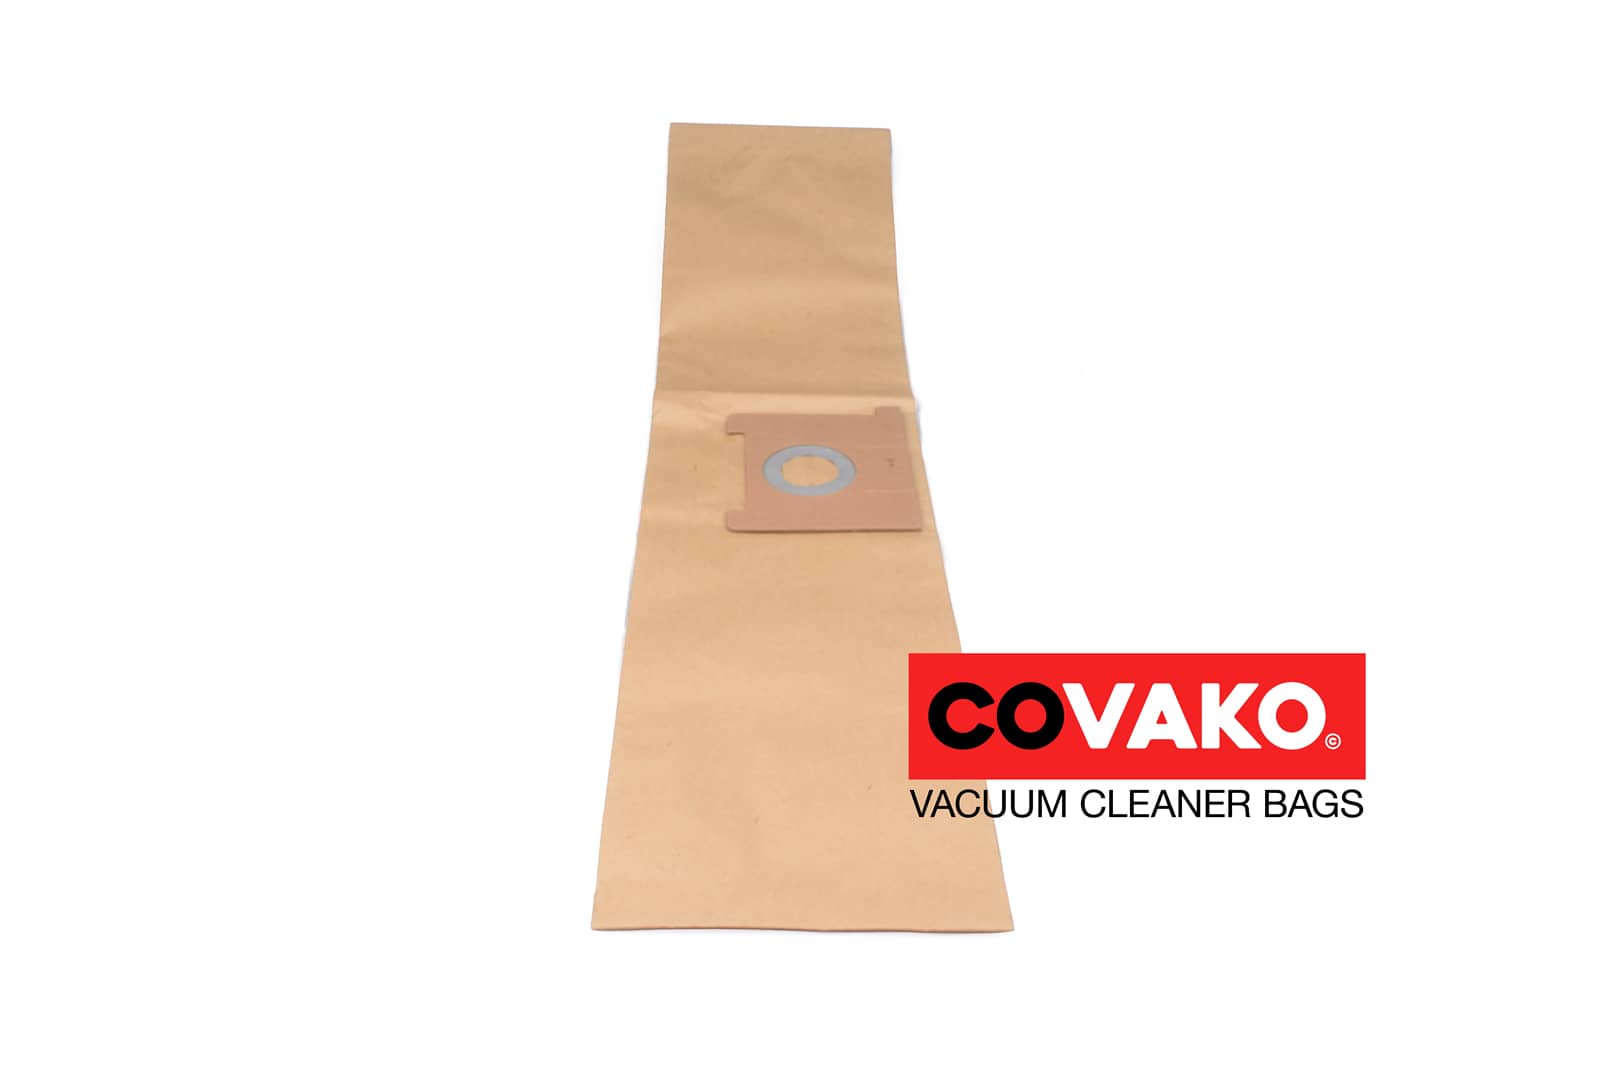 Clean a la Card Hi-Filtration 9.0 / Paper - Clean a la Card vacuum cleaner bags